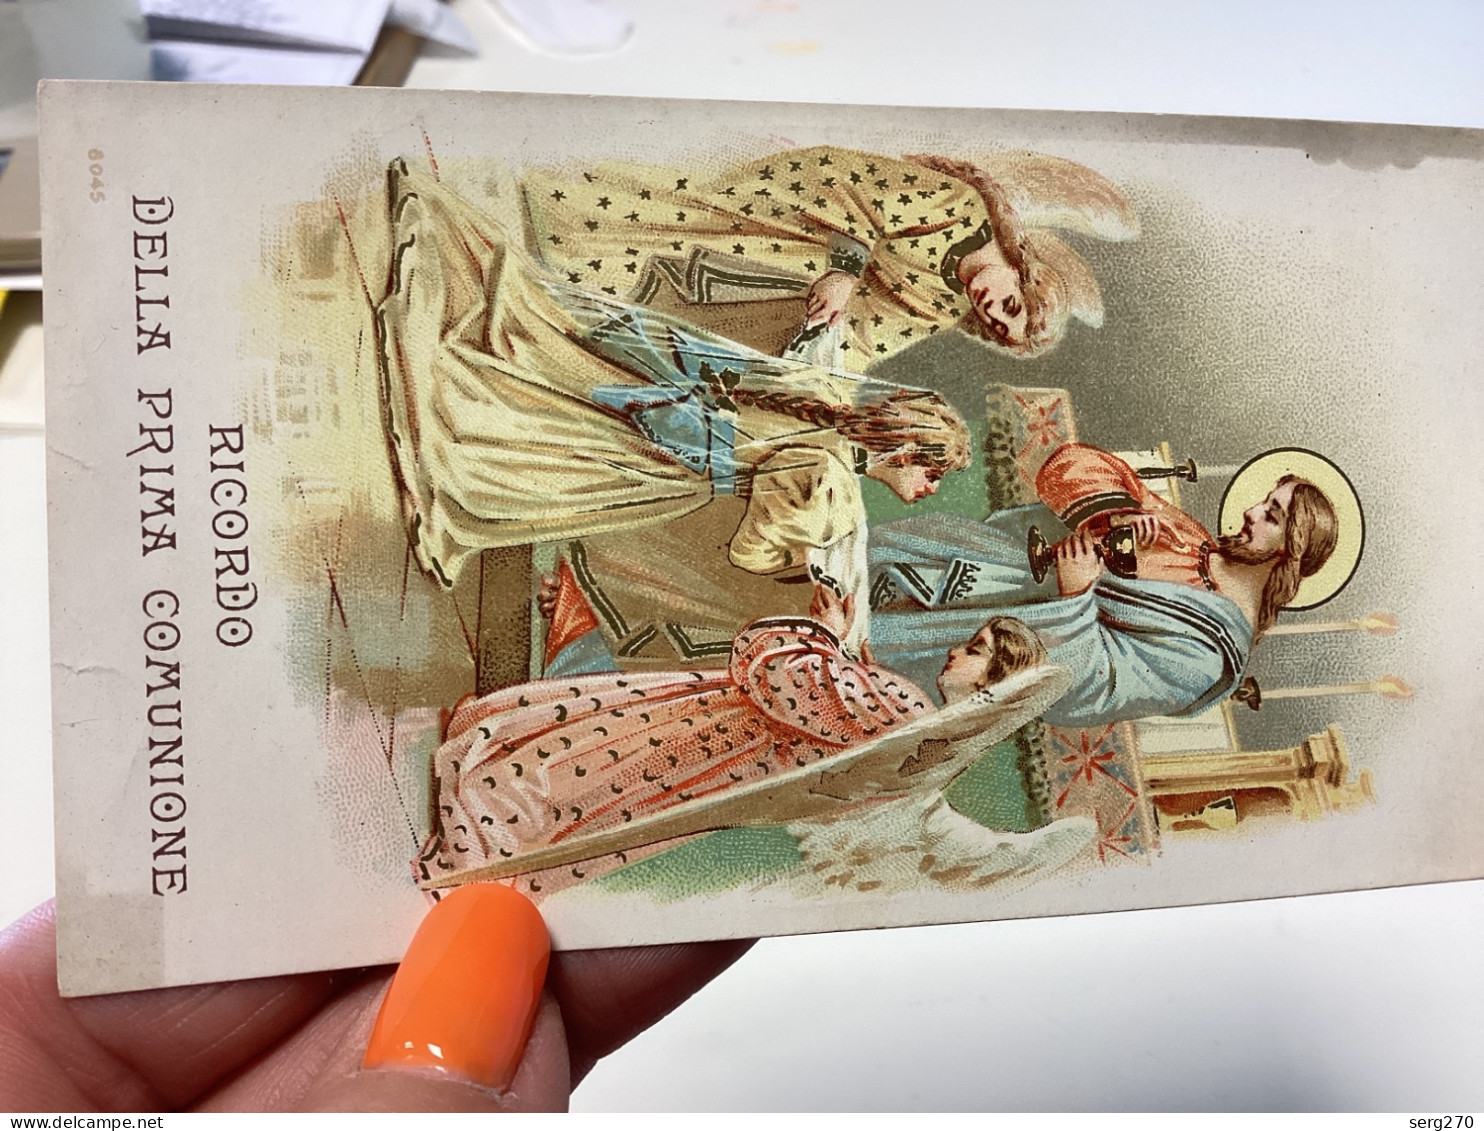 Image, Pieuse Et Religieuse, 1900 Couleur RICORDO DELLA PRIMA COMUNIONE Ursulines De Jesus - Santini